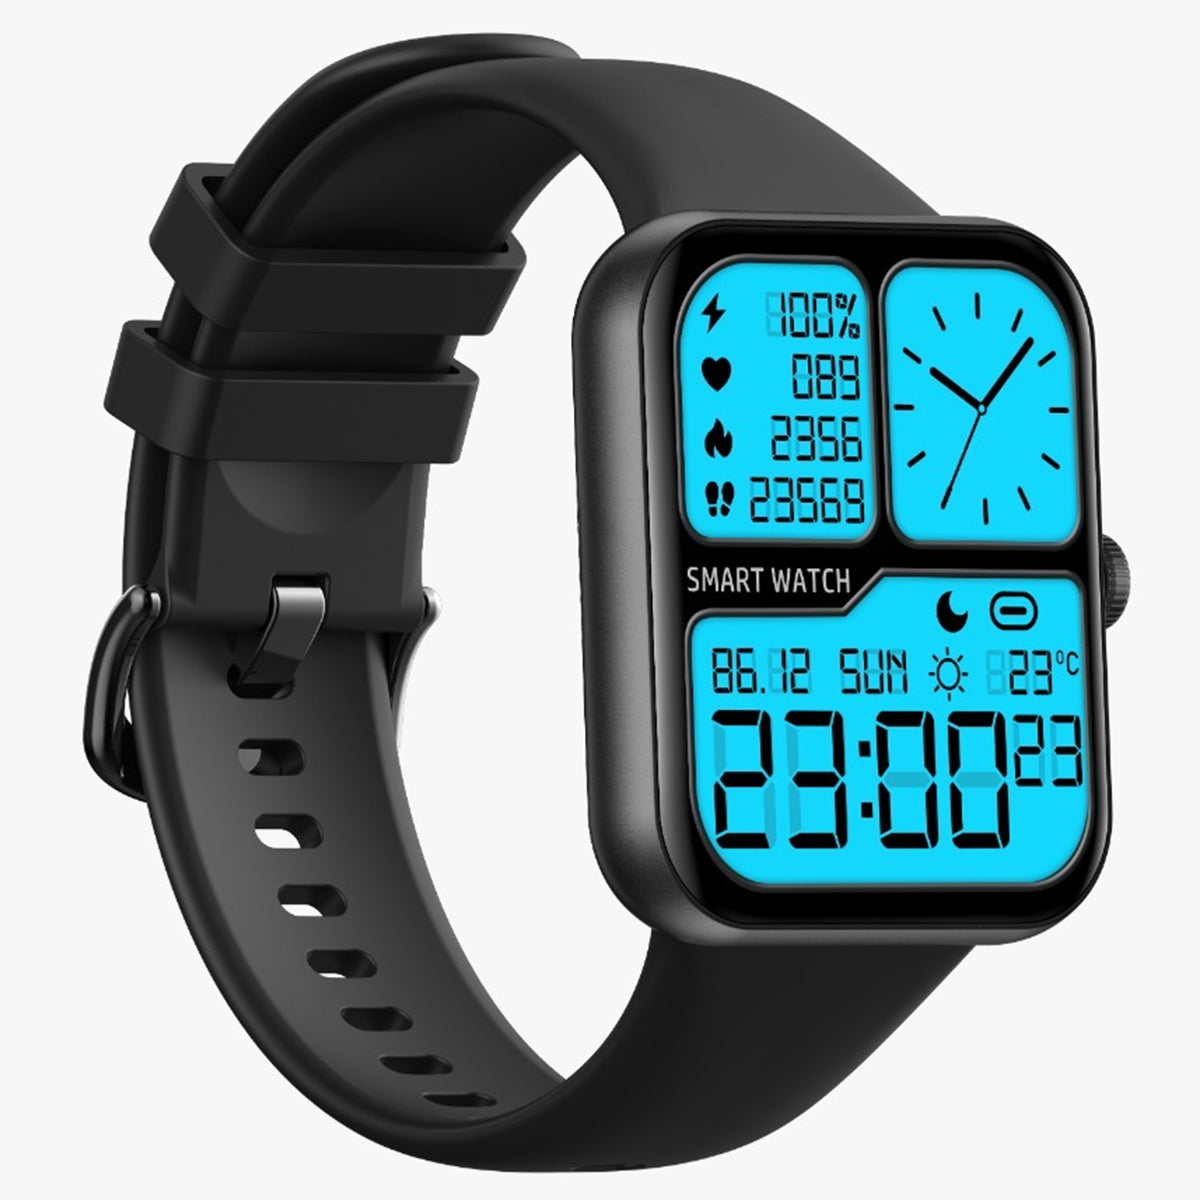 Fralugio Smart Watch Reloj Inteligente L32 Full Touch Ips Hd